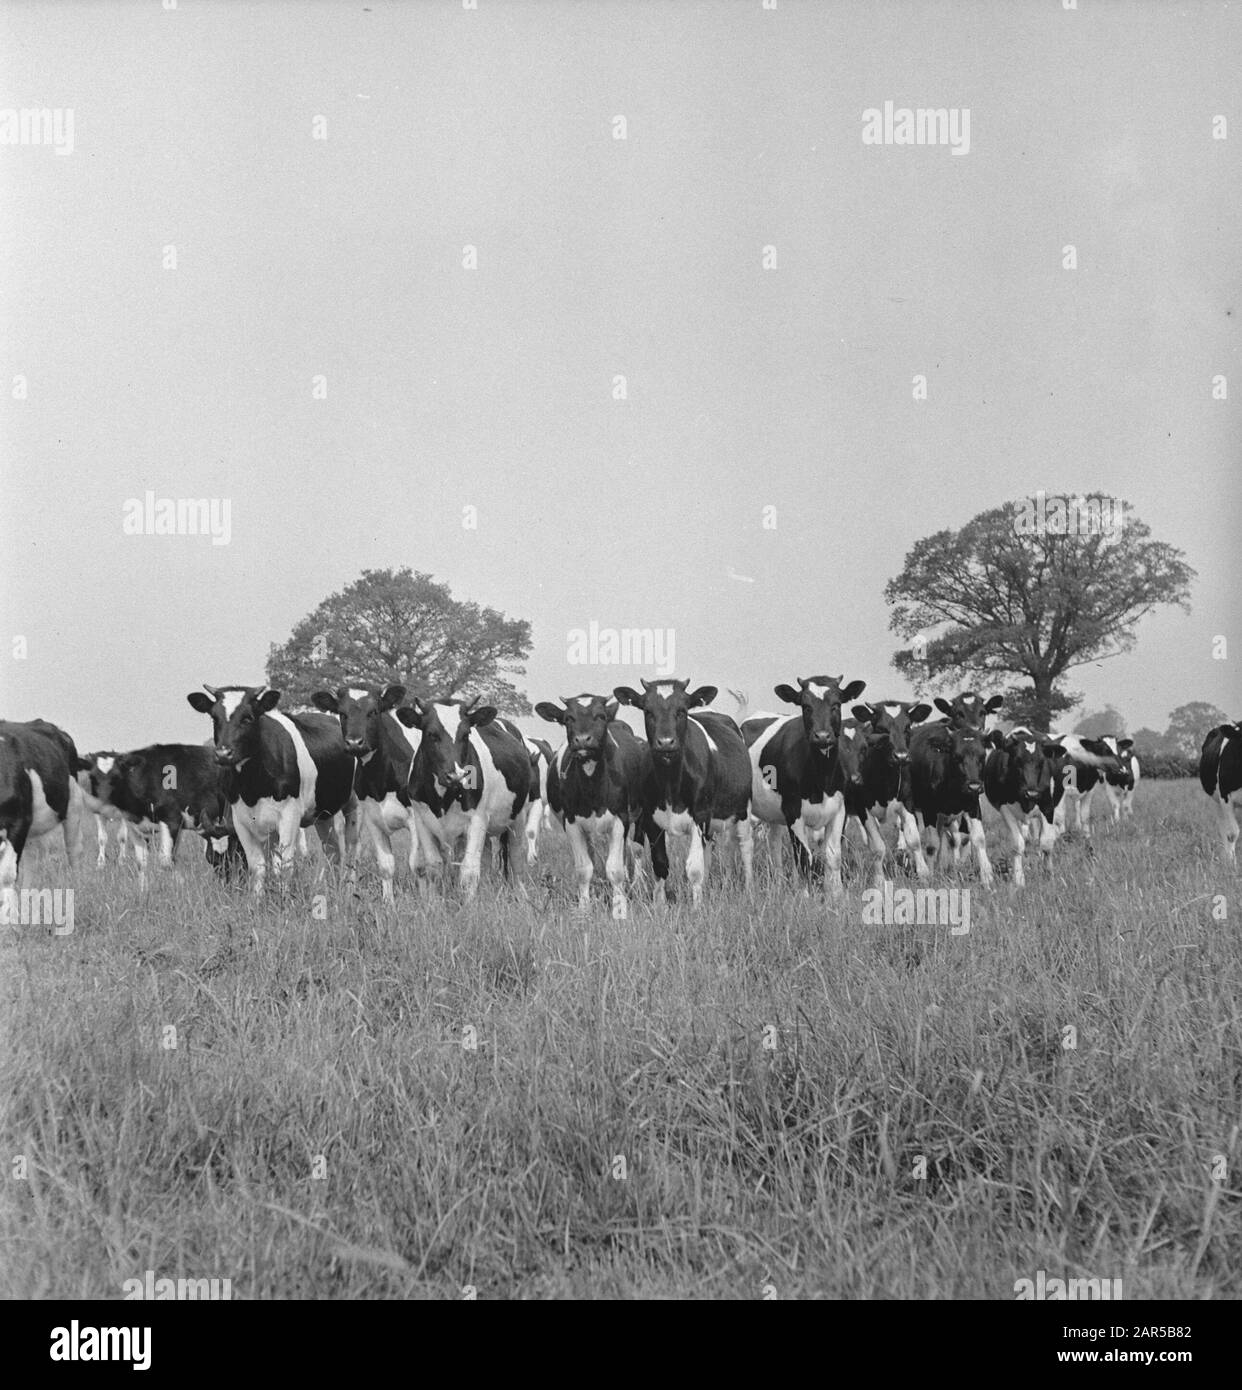 1938 gab es in Holland etwa 1,5 Millionen Milchkühe, die durchschnittlich 1000 Gallonen Milch pro P.a. Mit einem Fettgehalt von 3,56 produzierten. Viele Meisterkühe und Bullen wurden exportiert, um neue Herden in mehreren Ländern zu gründen. Die beiden ältesten in England ansässigen Herden sind die Terling- und die Lavenham-Herde, die mehr als 1500 Kopf an Lord Ralleighs Farmen in Essex zählen. Diese Herden - attestiert und tuberkulin getestet - haben viele Champions enthalten und erste Preise bei Milchmessen bereits im ganzen Land gewonnen. Kälber, hauptsächlich von Lavenham Jantol Datum: Juni 1943 Ort: Essex, Großbritannien Stichwörter: Stockfoto